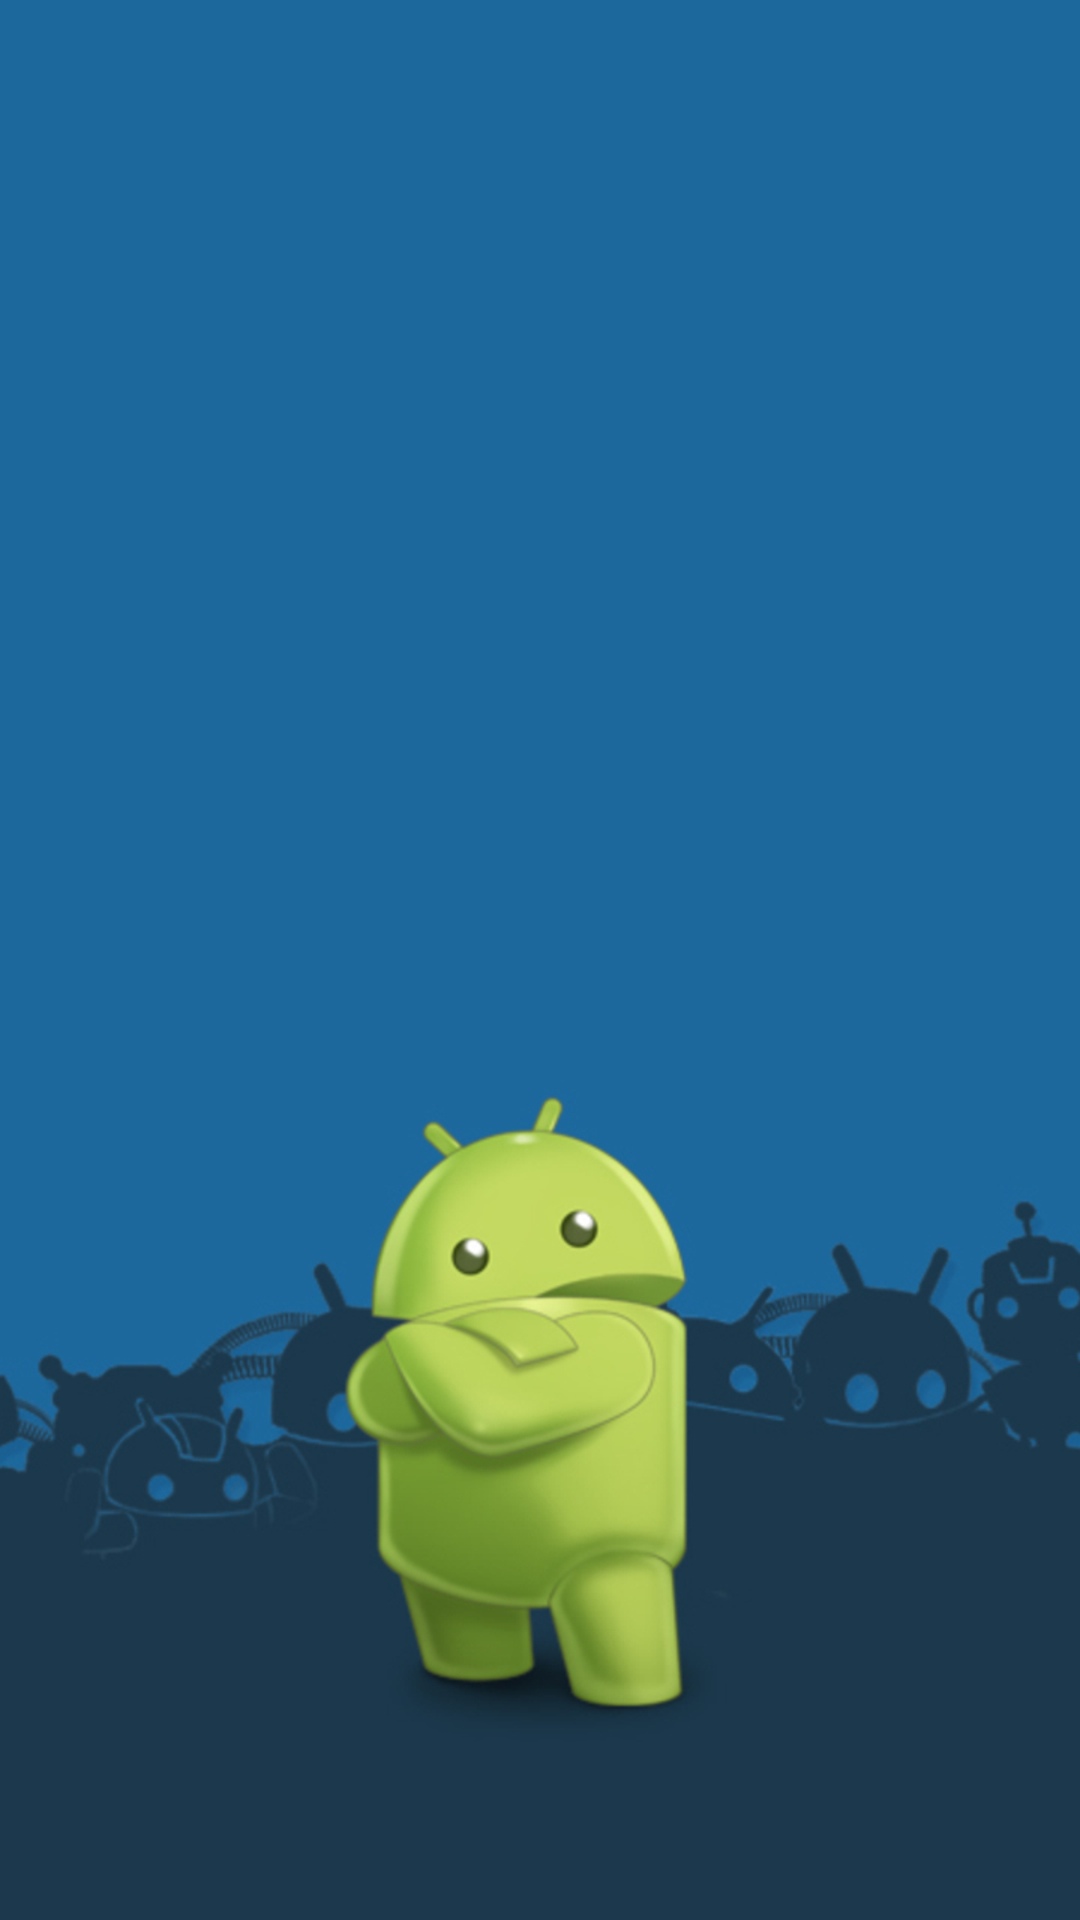 sfondi per smartphone android,blu,verde,cartone animato,giallo,illustrazione